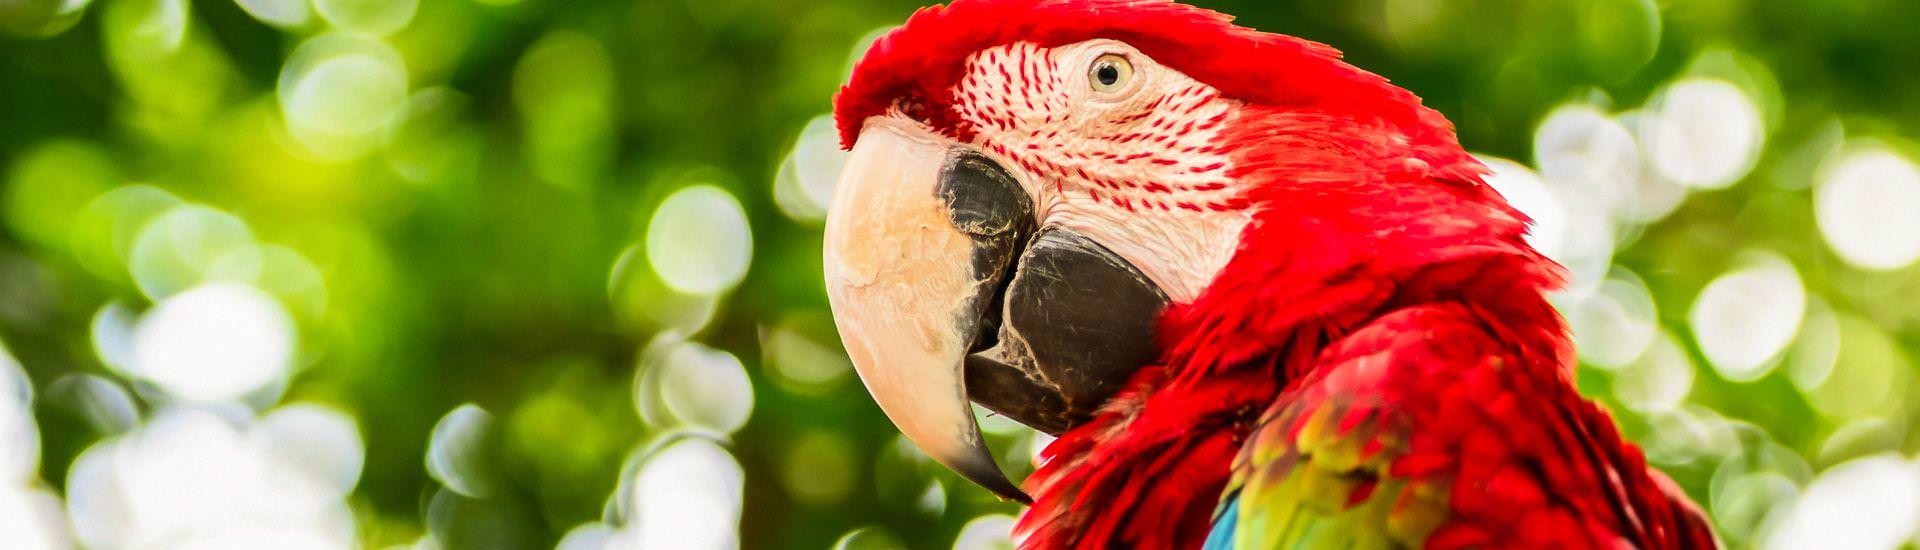 Big macaw parrots |  Iryna Rasko, iStockphoto.com / Chamleon